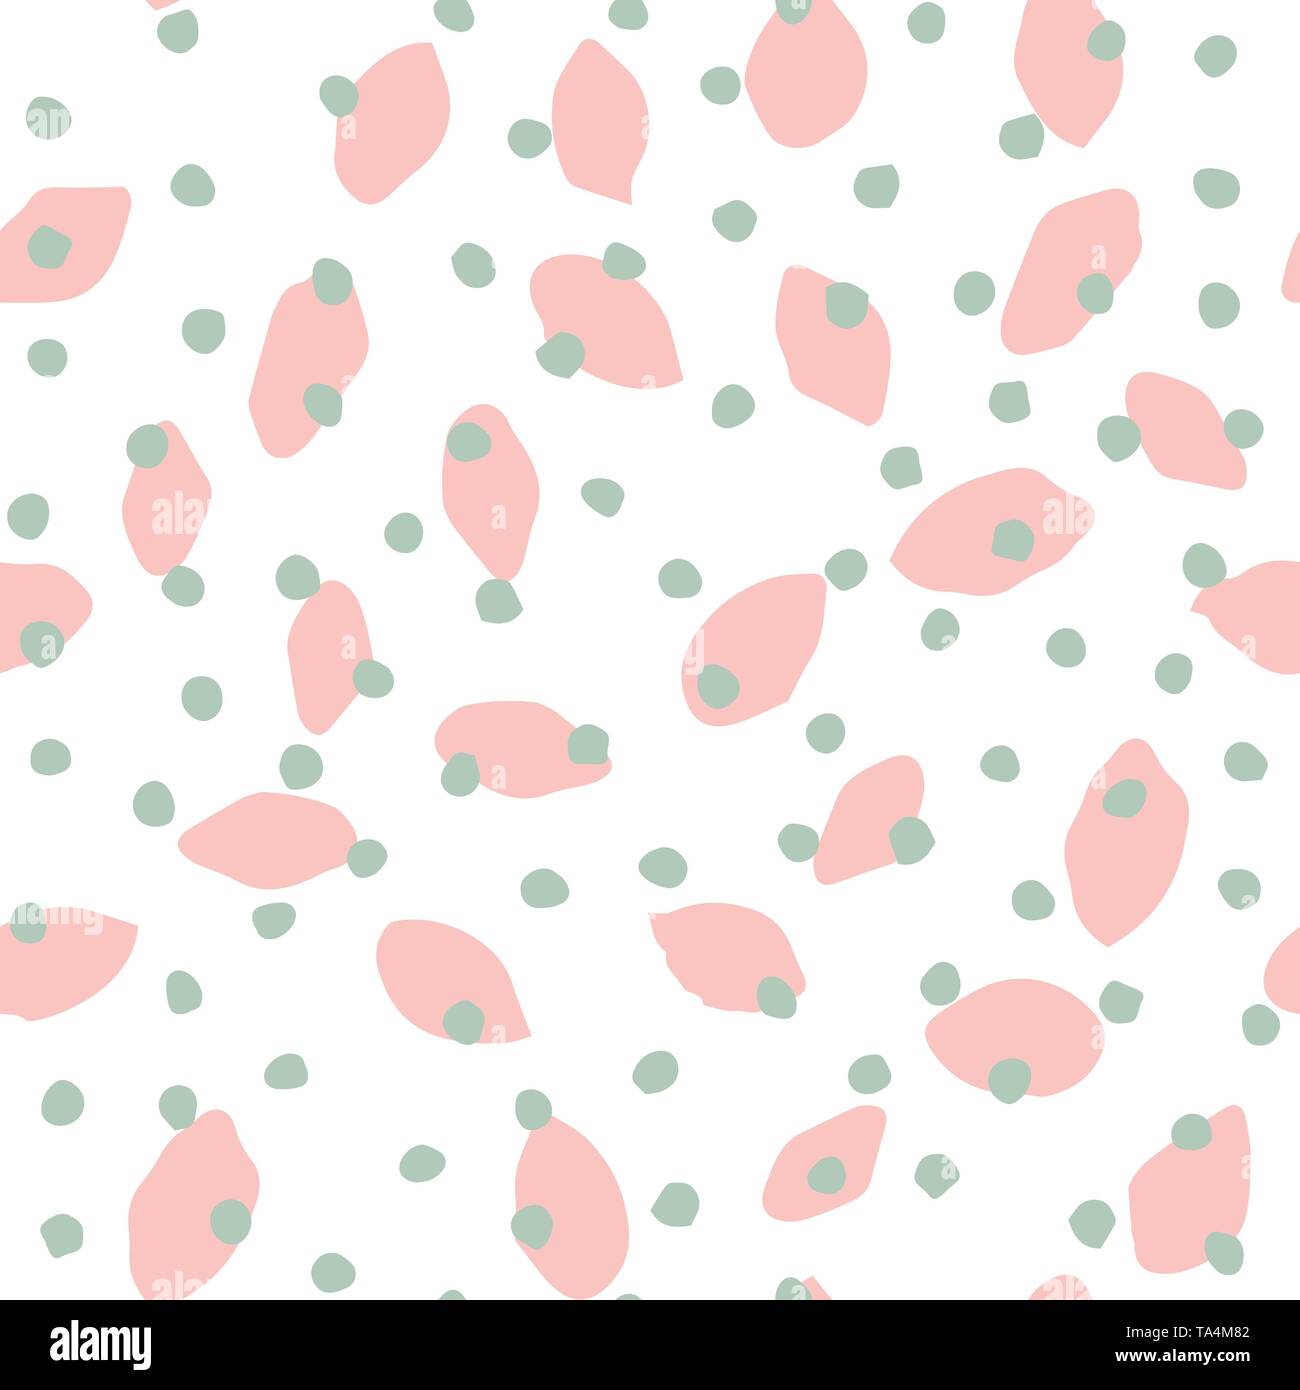 Vektor nahtlose Muster Hand gezeichnet Polka Dot Pinsel. Abstrakte endlose Hintergrund. Die Beschaffenheit der Farbe in Pastelltönen rosa und Mint Stock Vektor